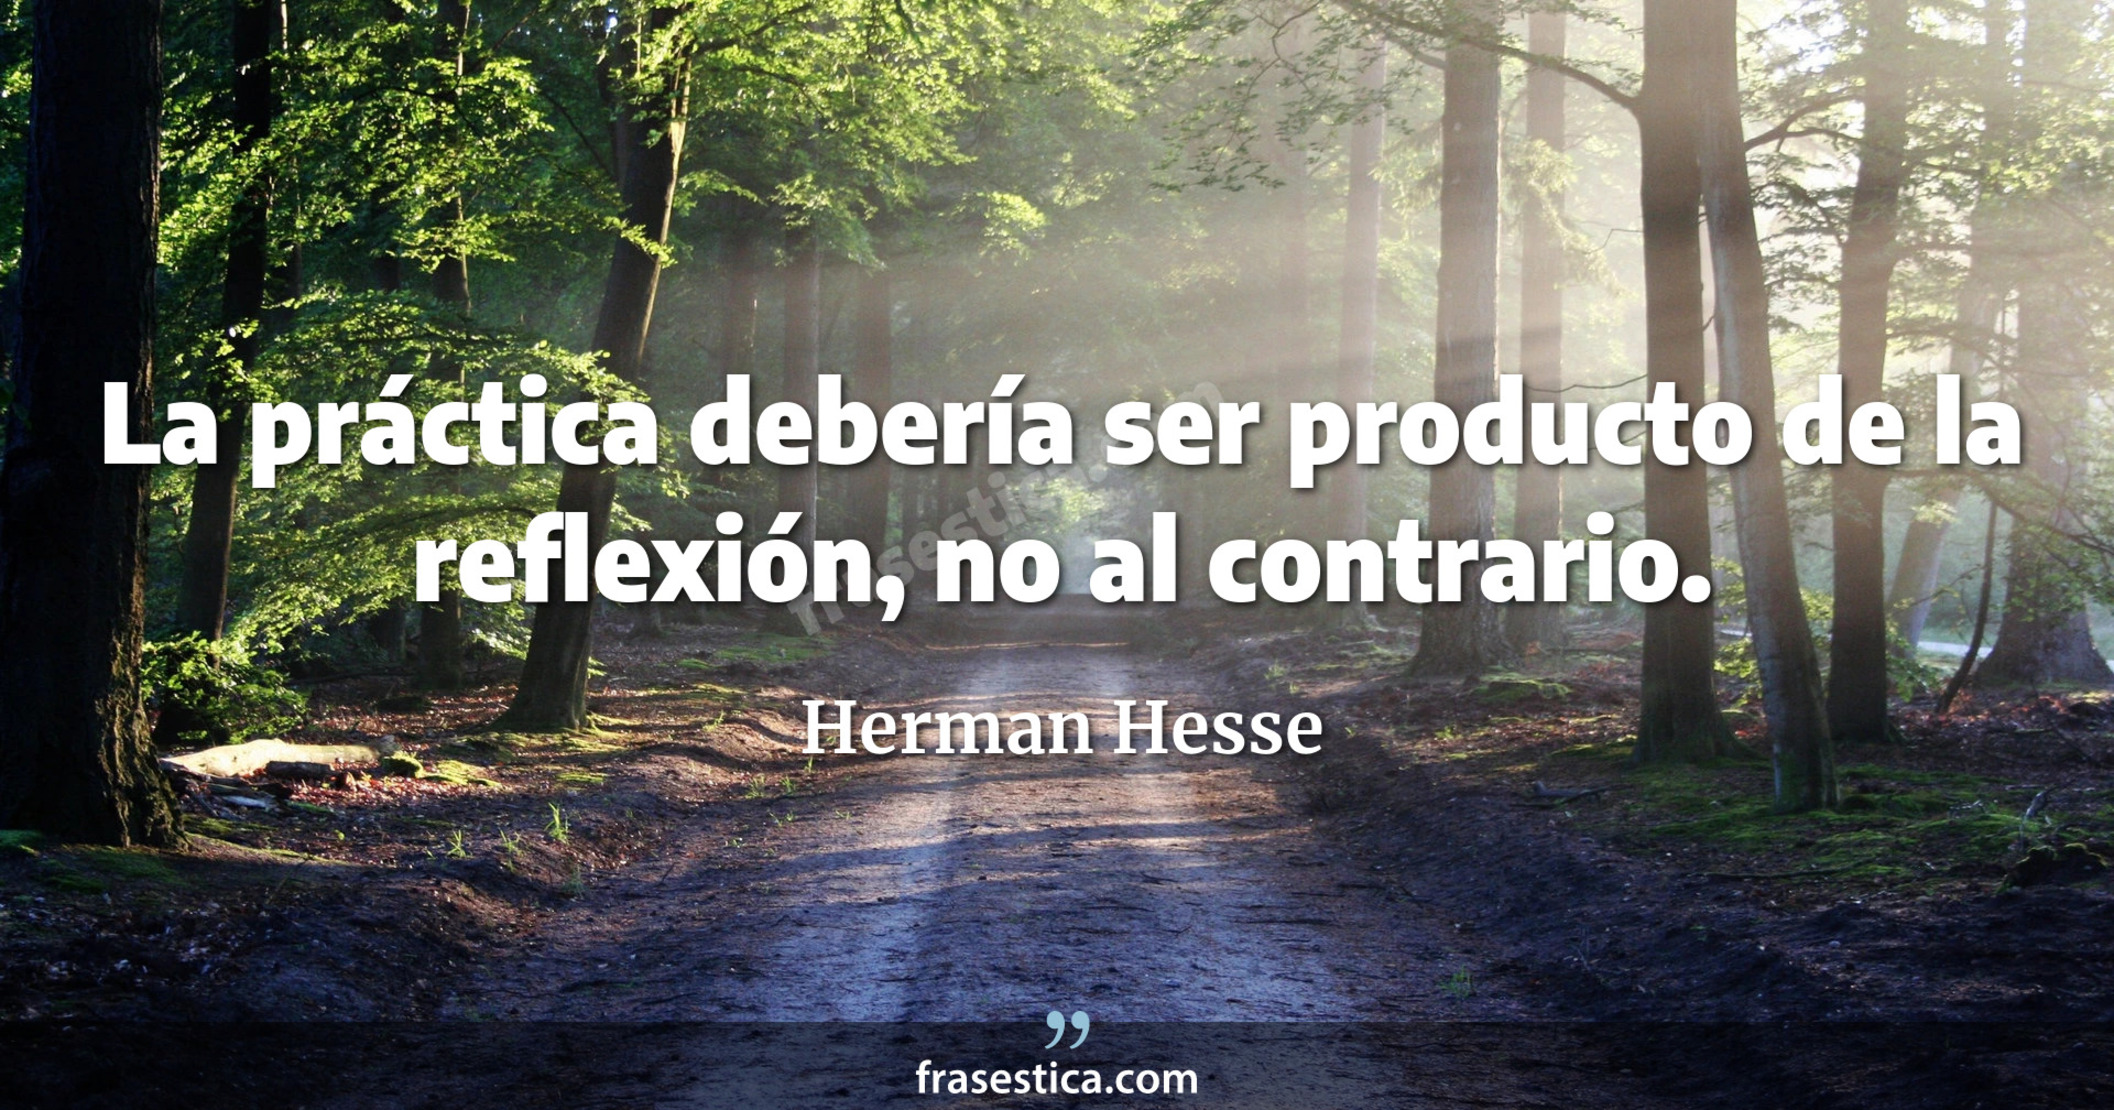 La práctica debería ser producto de la reflexión, no al contrario. - Herman Hesse